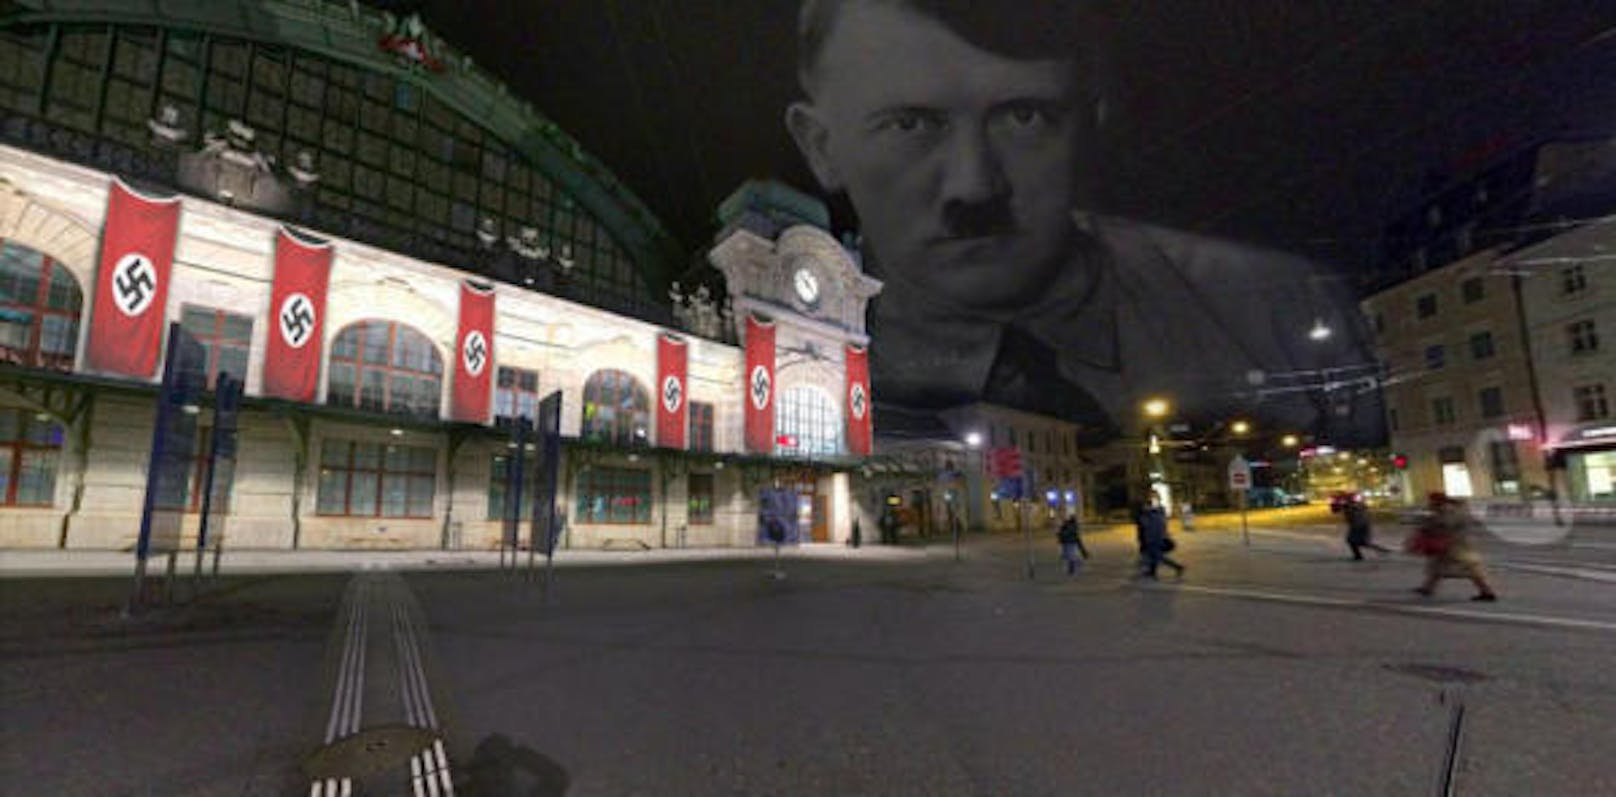 Der Bahnhof Basel mit Nazi-Flaggen und dem Antlitz von Adolf Hitler ist zu sehen...